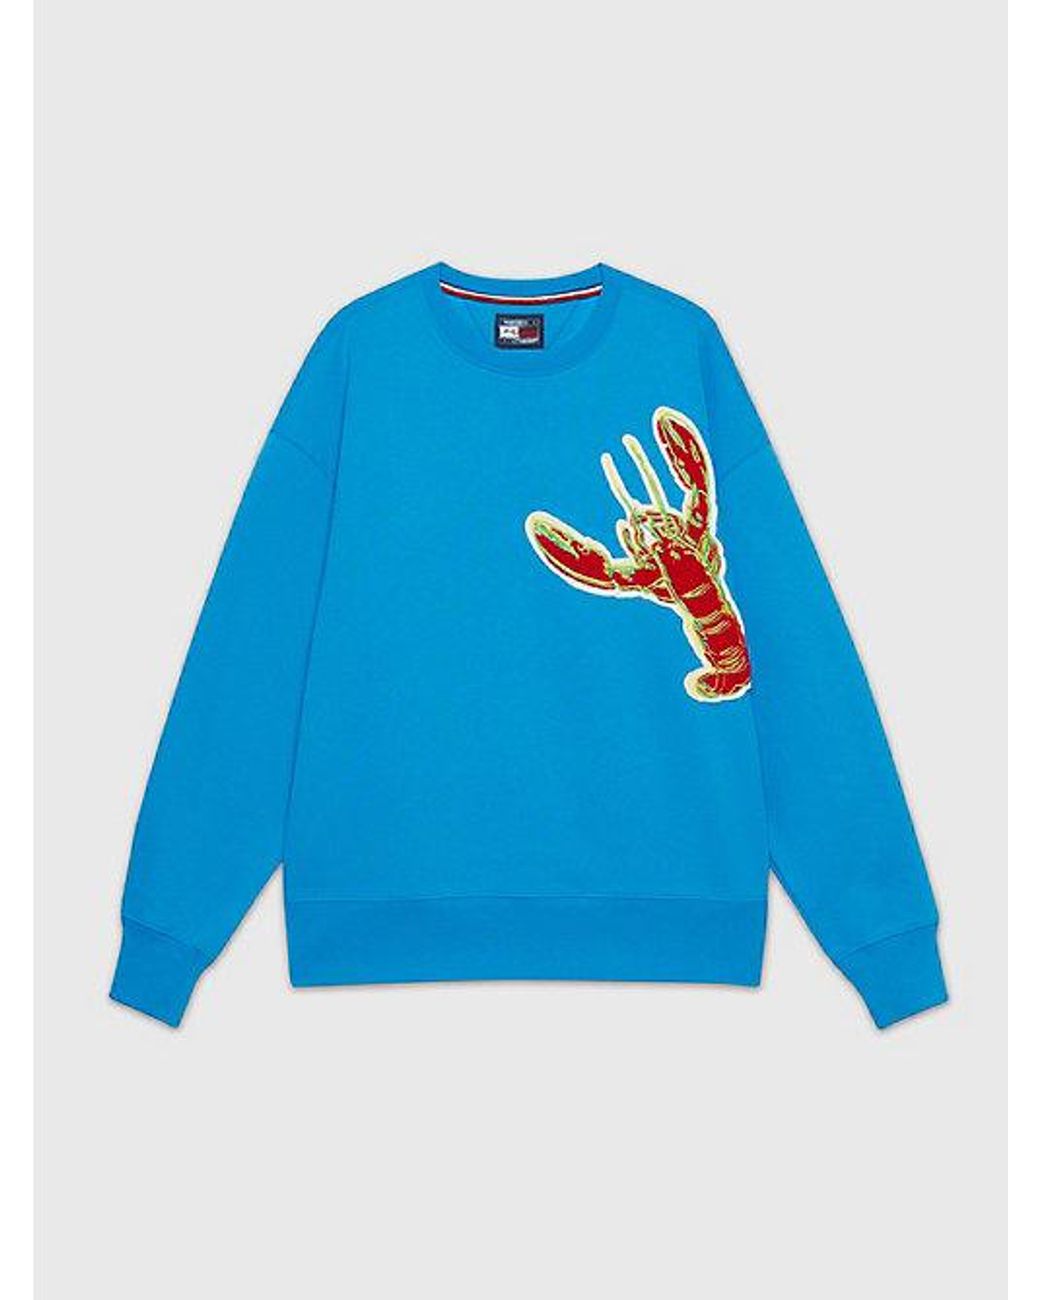 Tommy Hilfiger X Andy Warhol Sweatshirt mit Hummer-Print in Blau für Herren  | Lyst DE